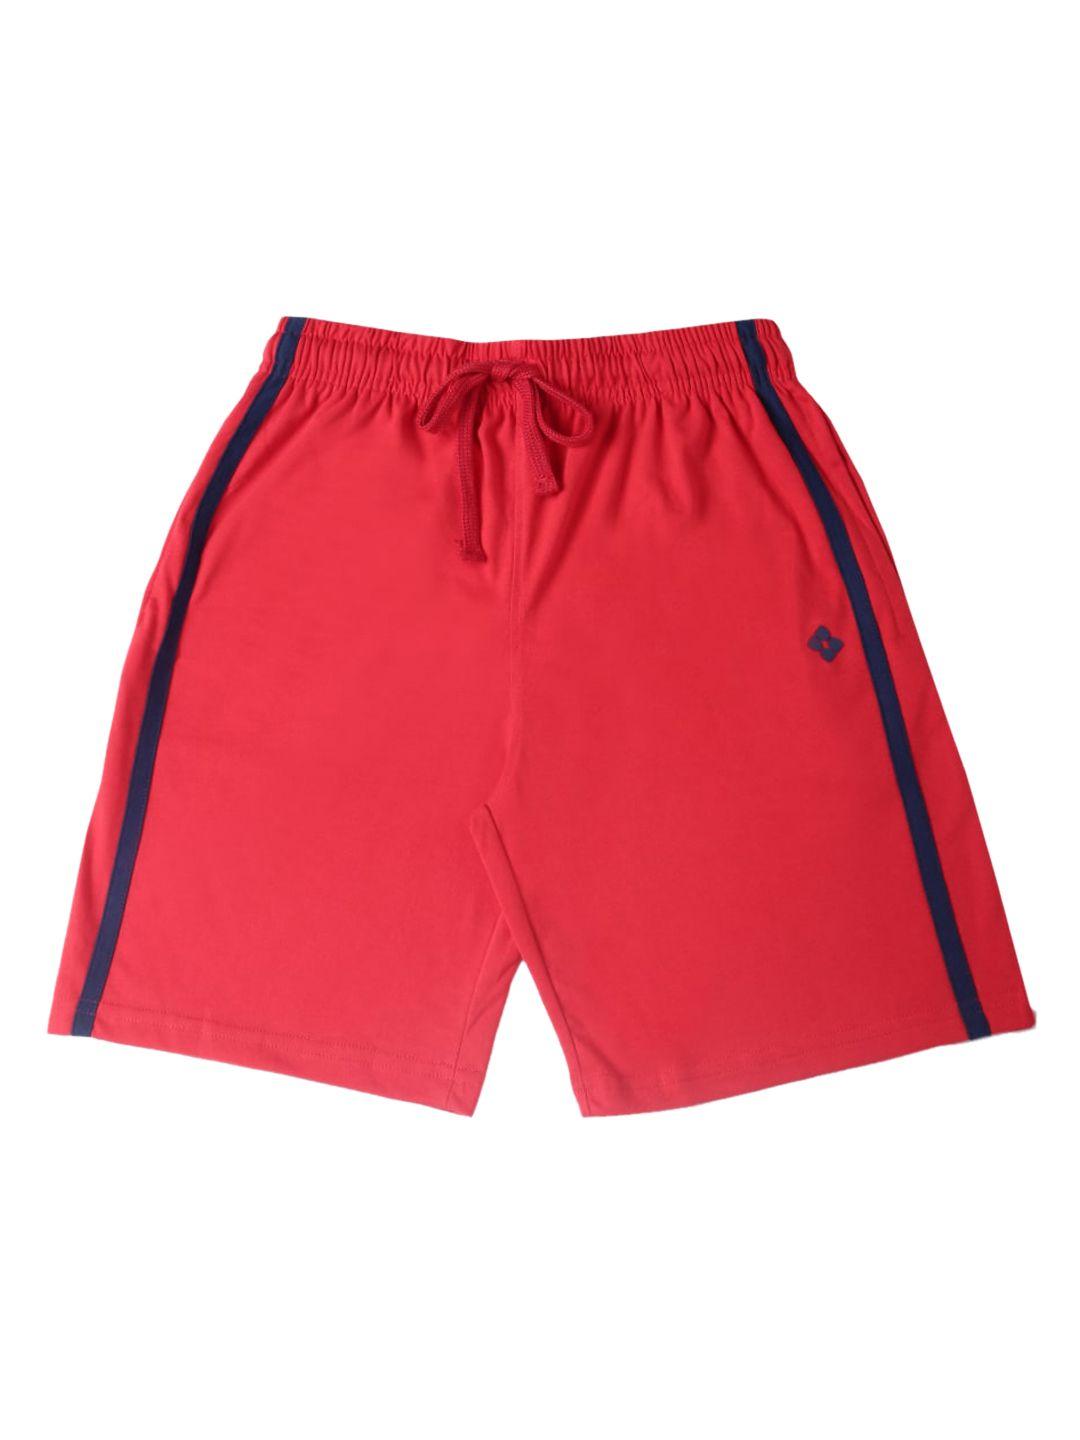 dollar boys red solid regular fit regular shorts